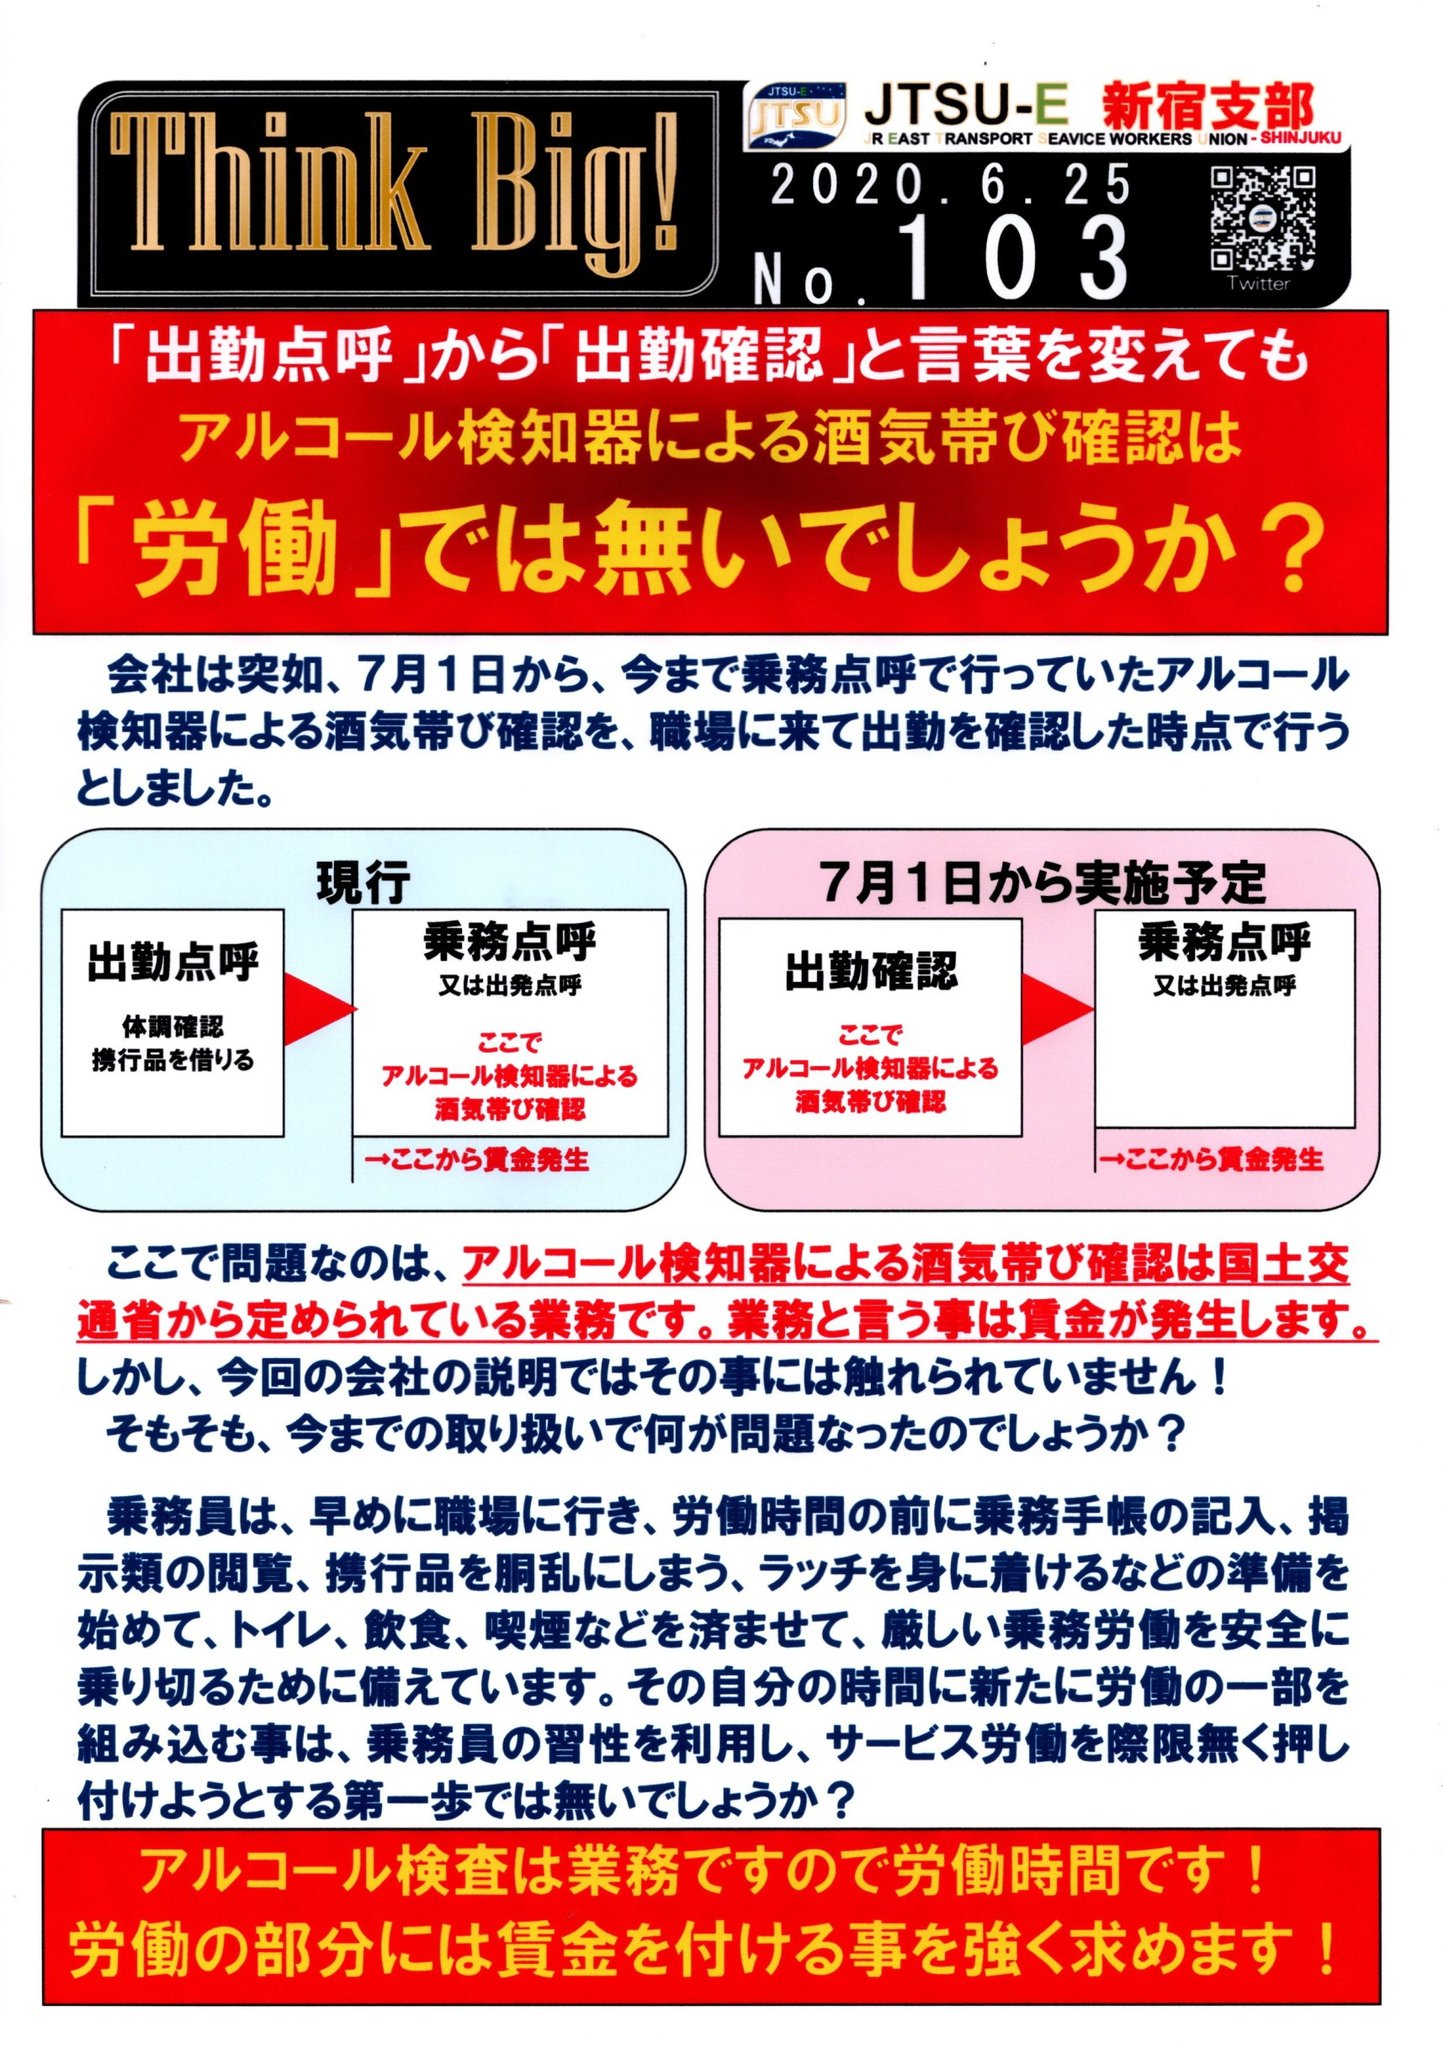 【乗務点検を無賃金に】JR東日本の突然の賃金削減に労働組合が反発